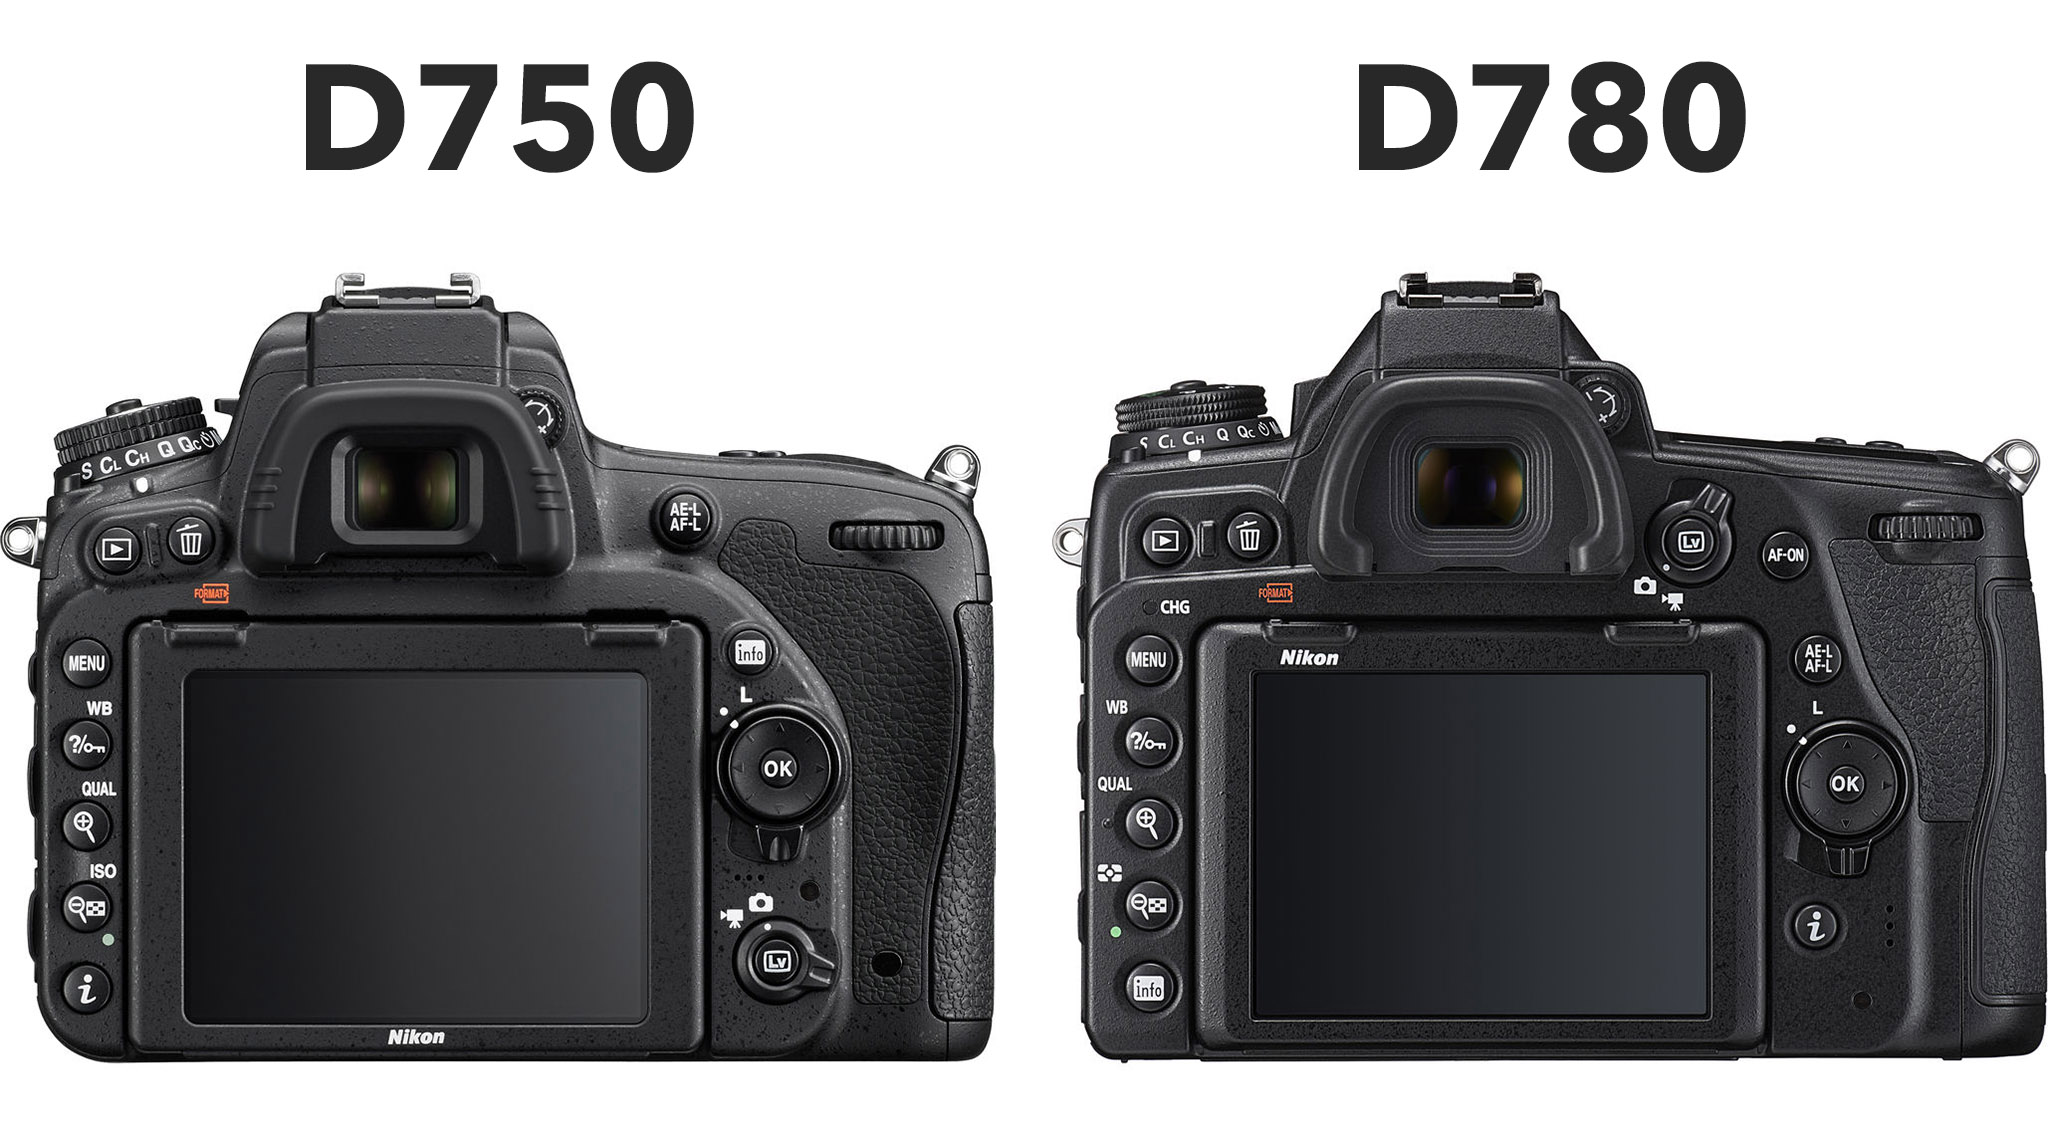 Nikon D750 vs D780 - Which Should You Buy?